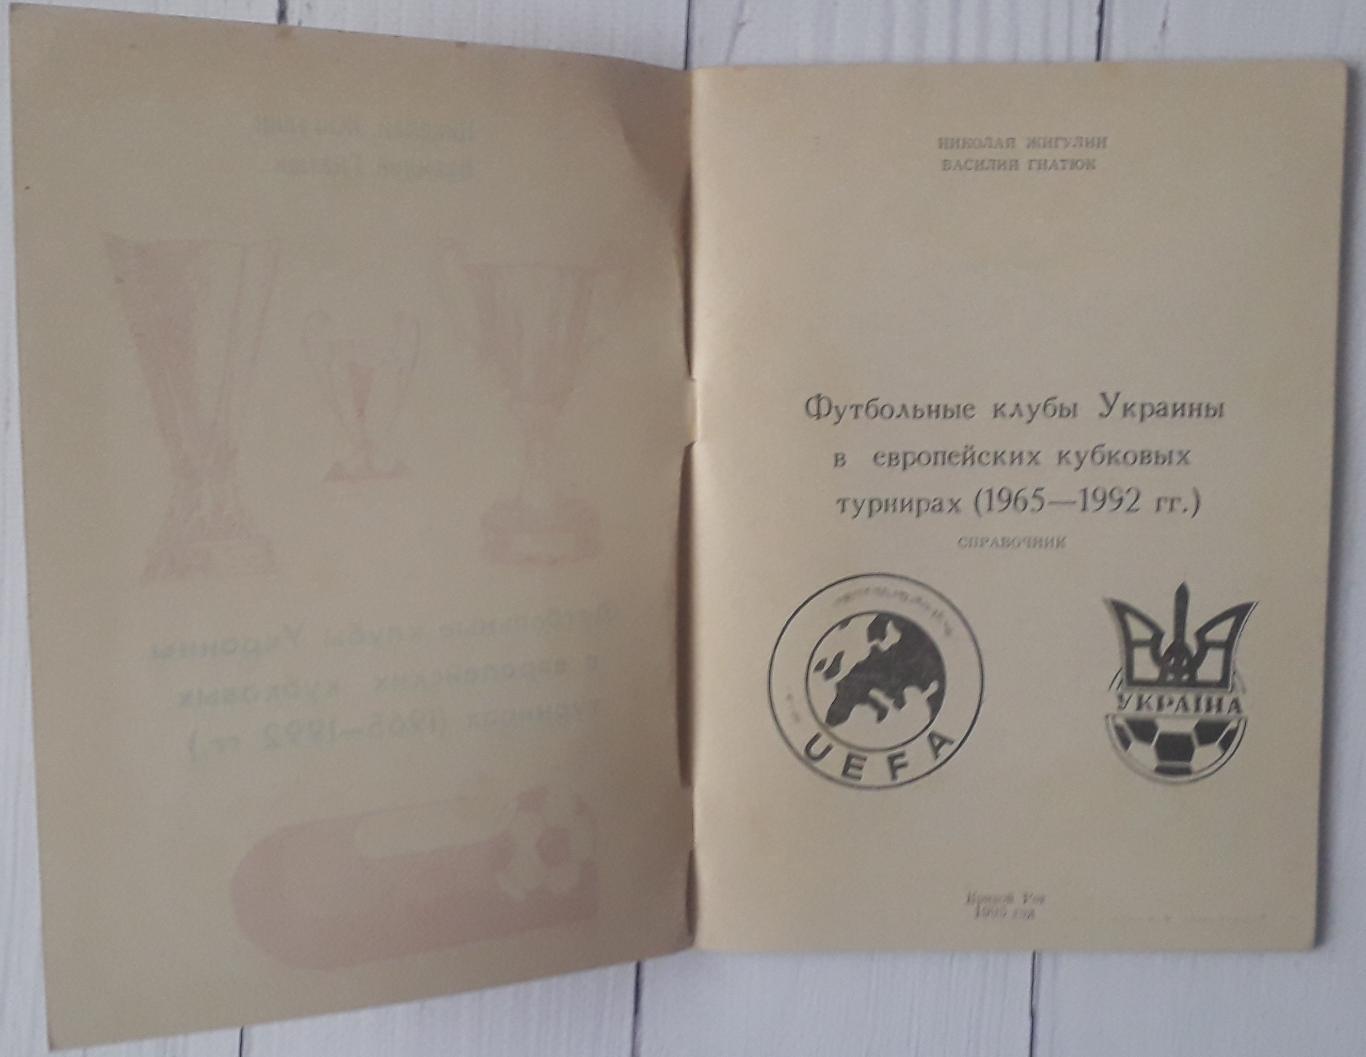 Футбольные клубы Украины в еропейских кубковых турнирах (1965-1992 гг.) 1